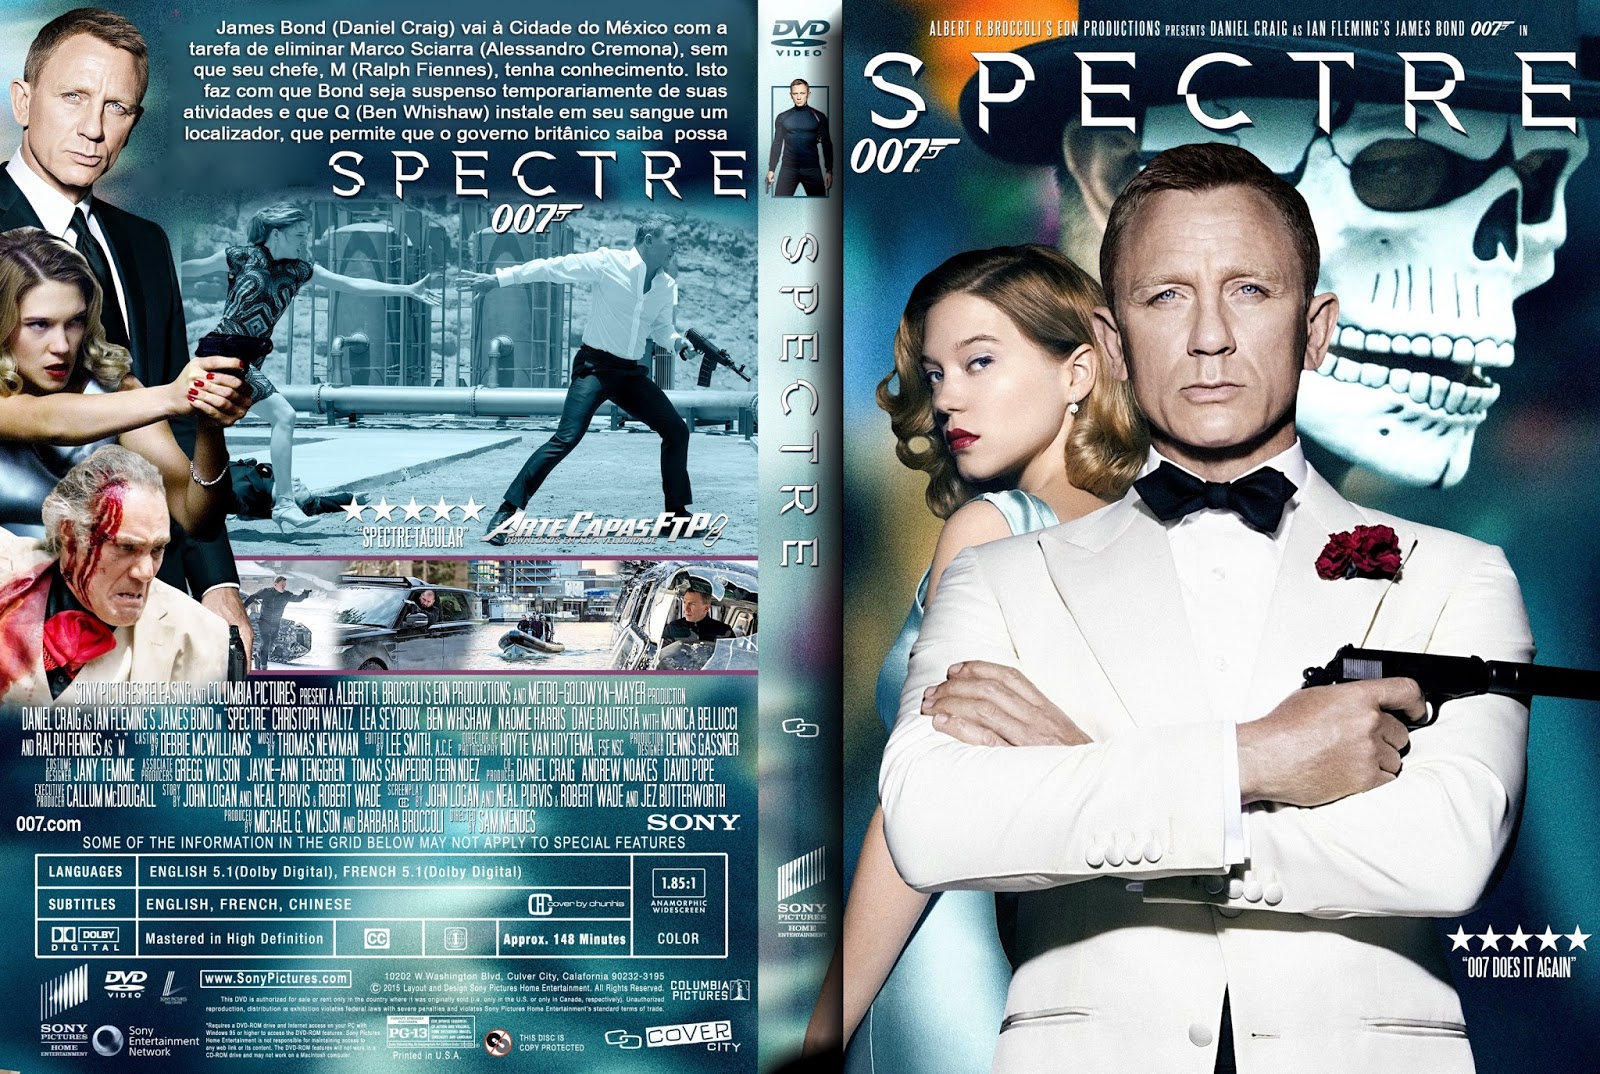 دانلود فیلم Spectre 2015